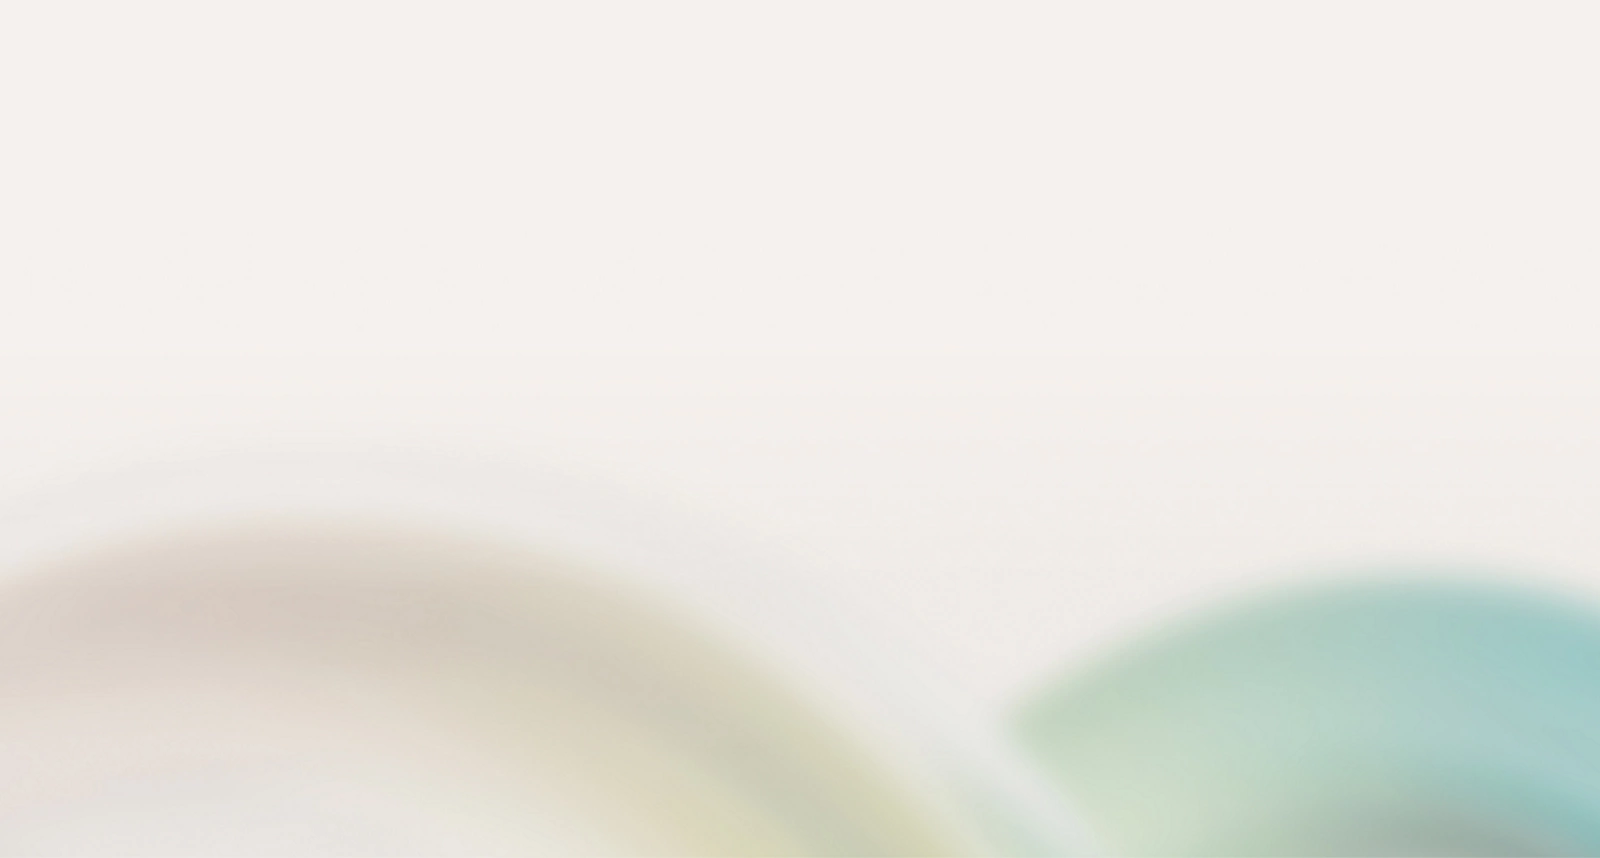 Fondo borroso abstracto con colores pastel suaves, principalmente blanco con sutiles indicaciones de verde y azul.